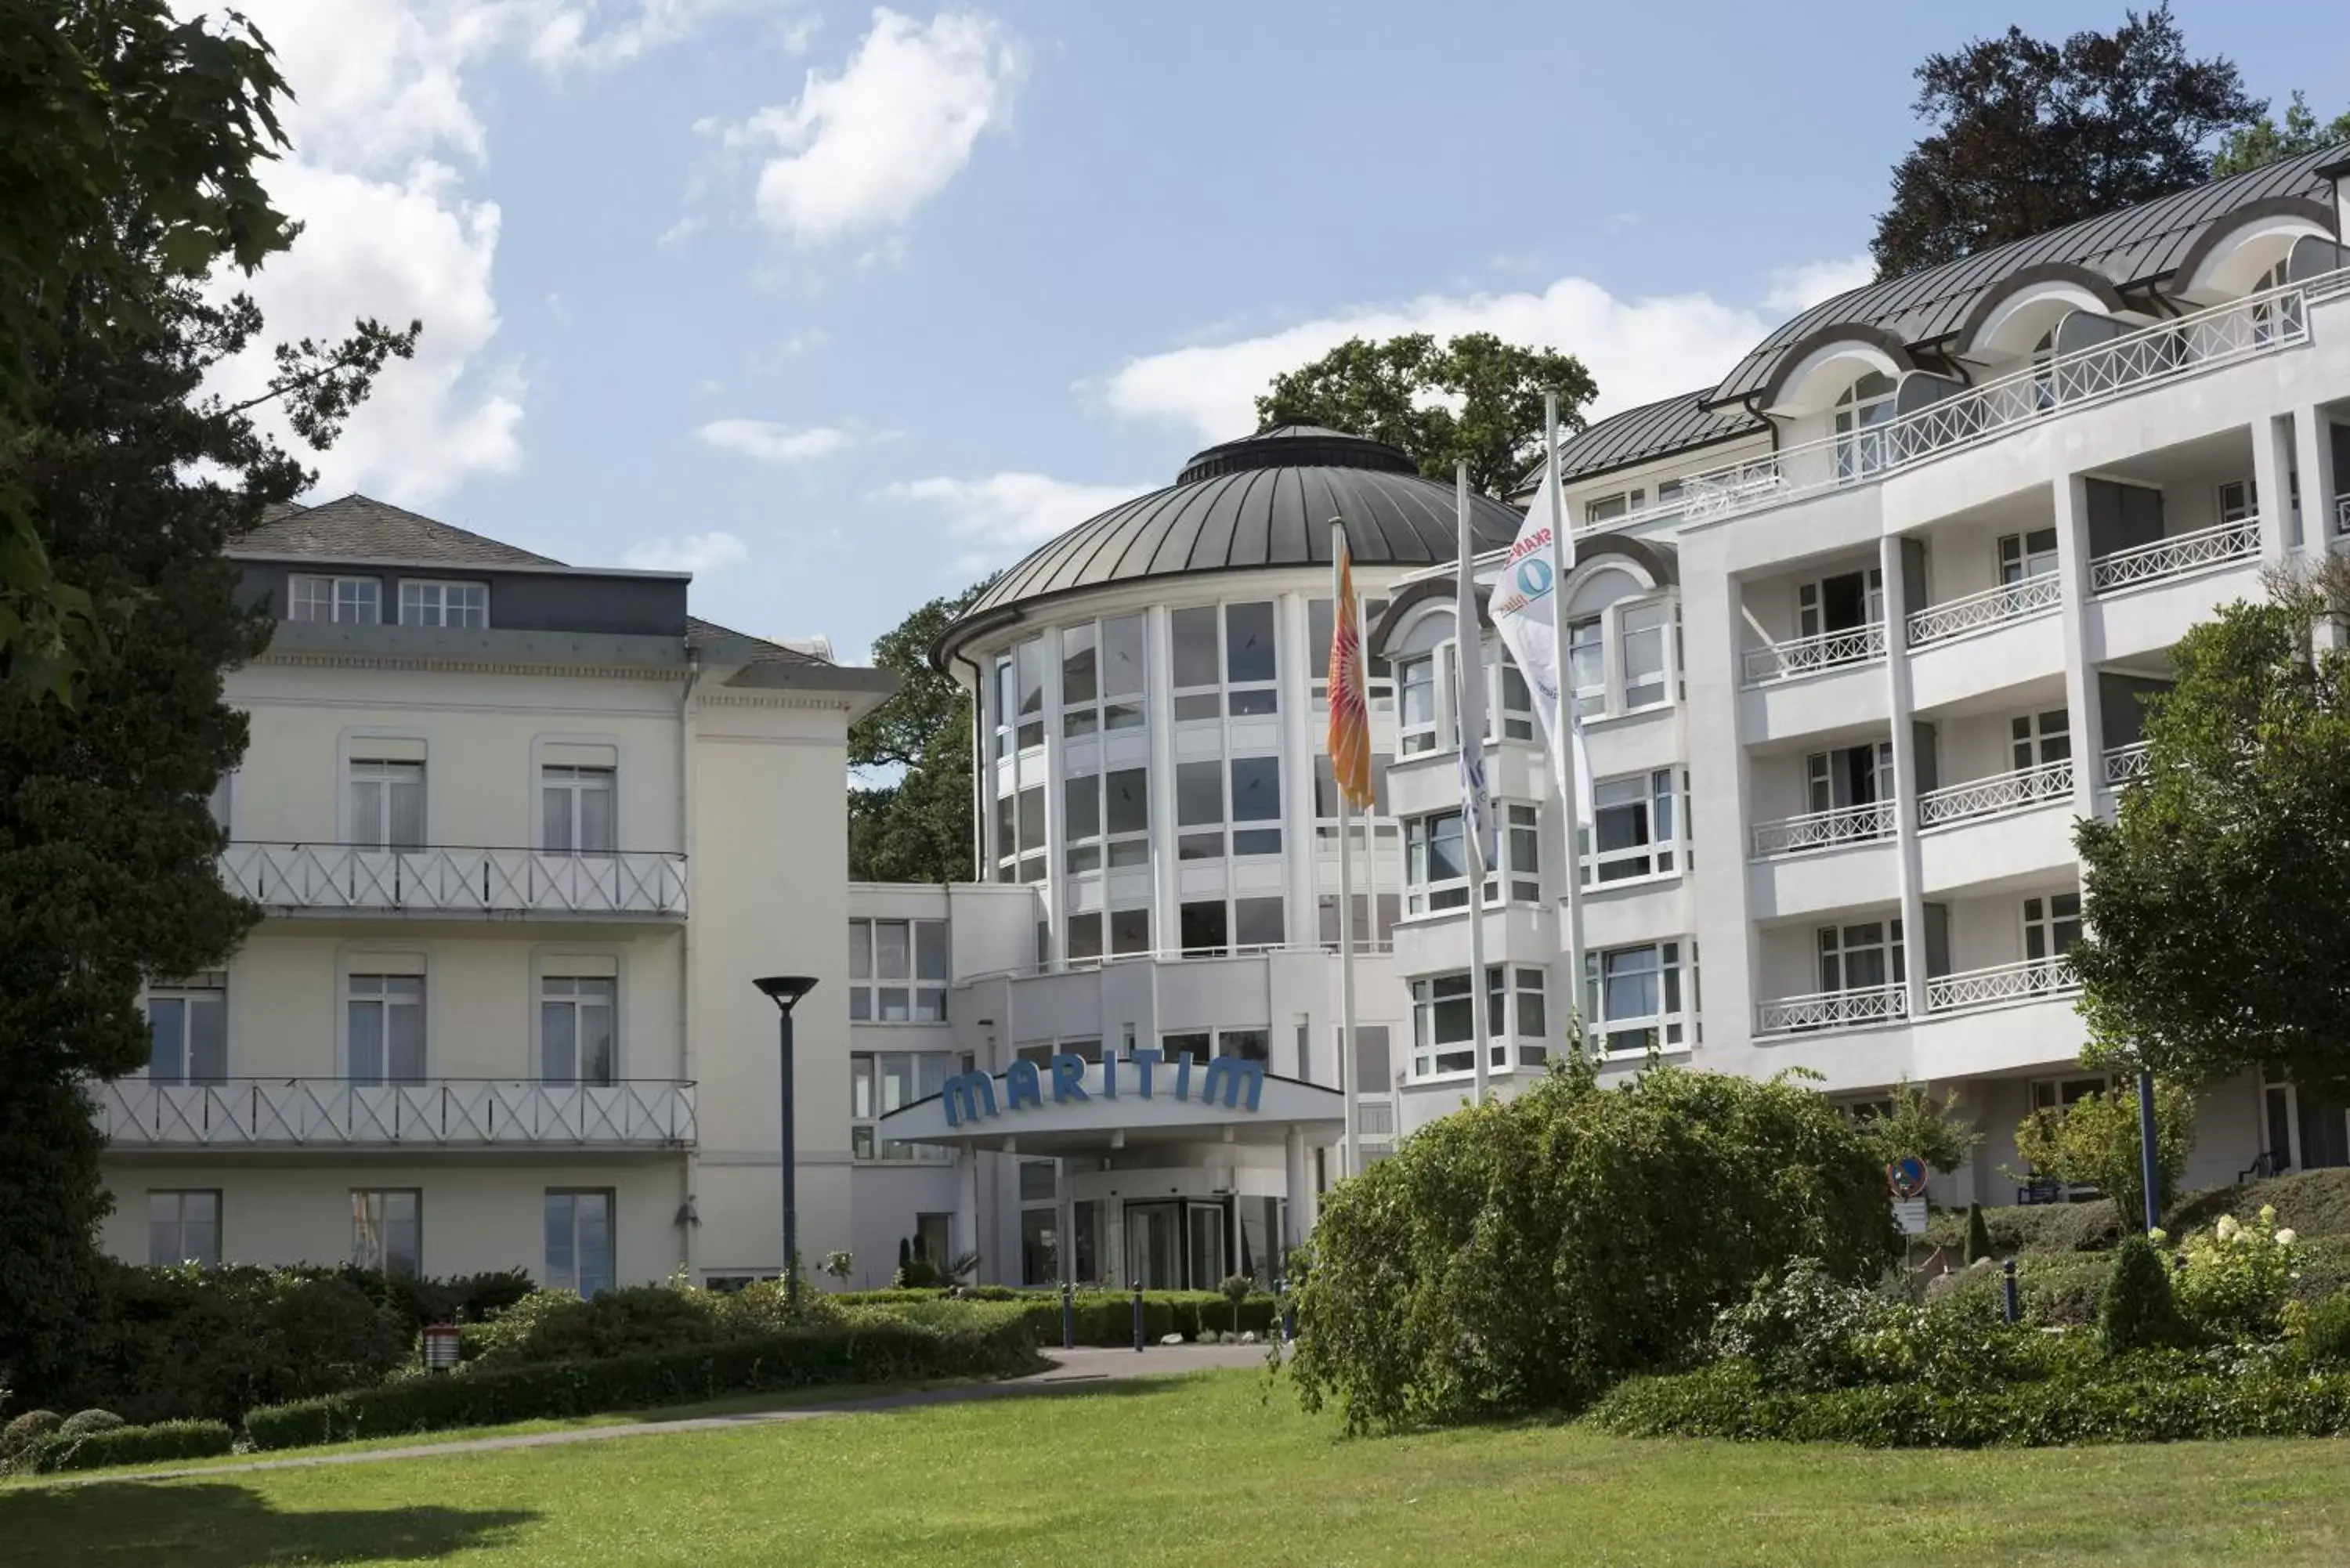 Property Building in Maritim Hotel Bad Wildungen